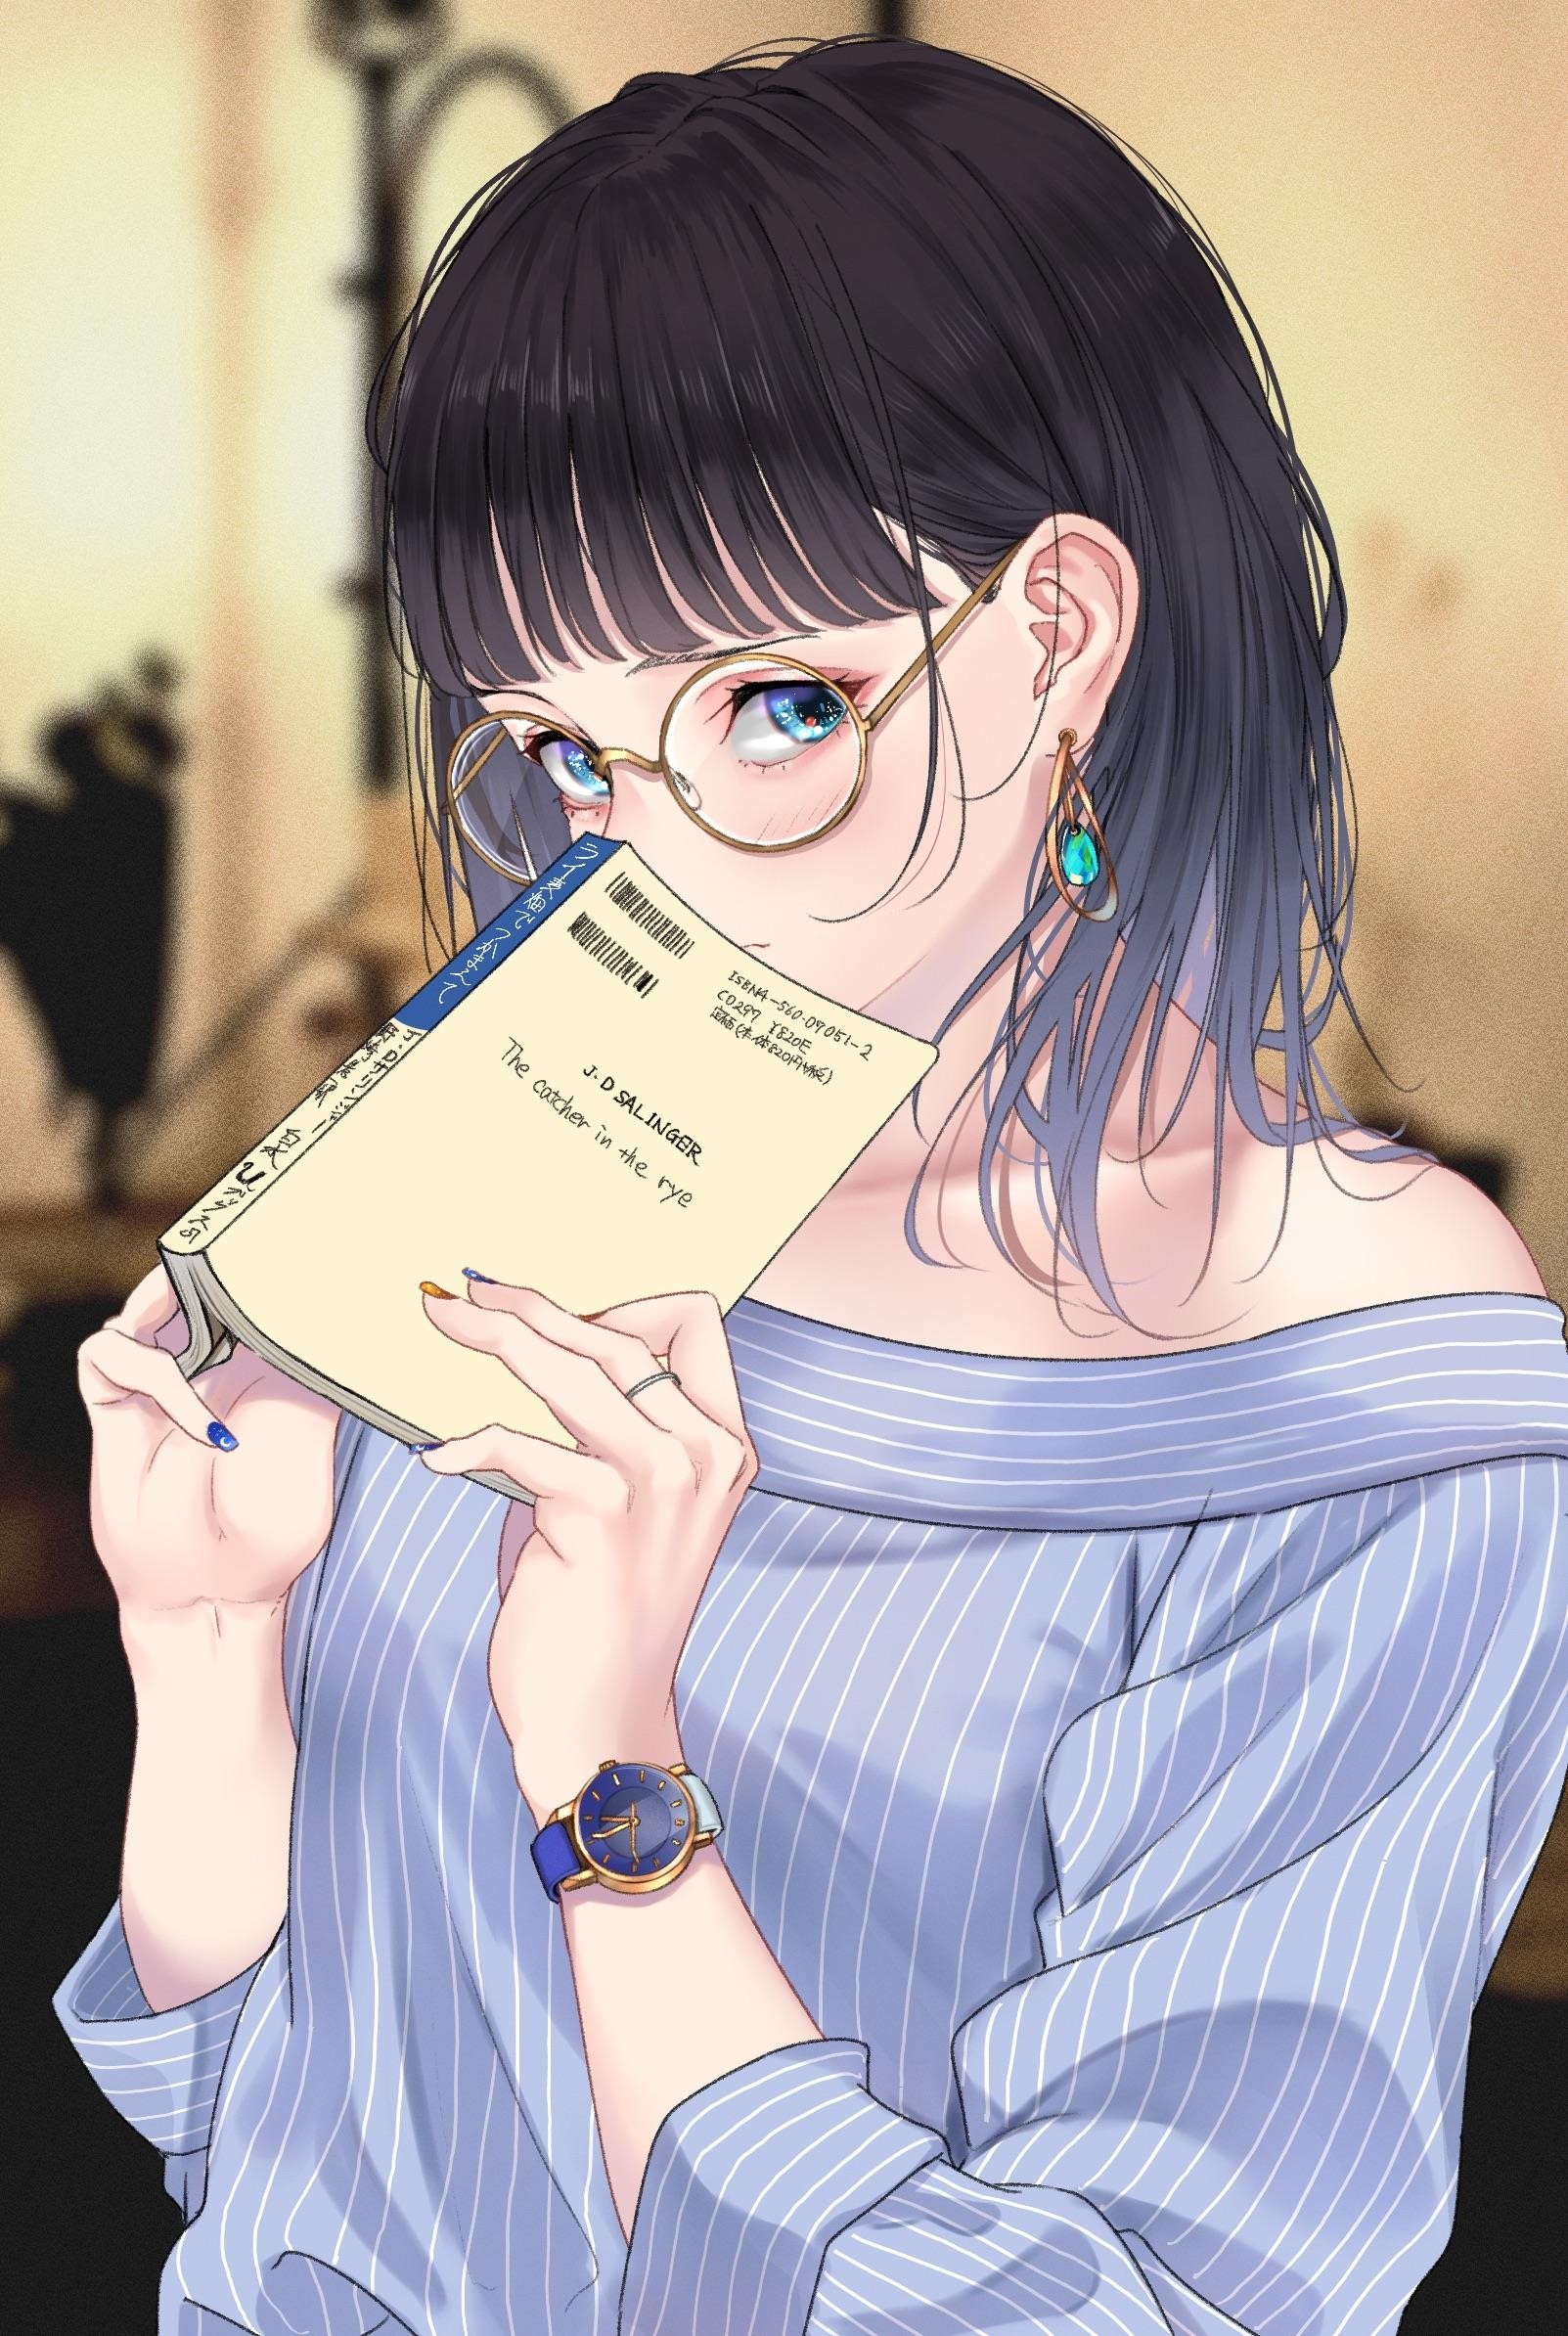 Ảnh anime nữ cute đeo kính mang đến một vẻ đẹp đáng yêu và dễ thương, kính càng tôn thêm vẻ trí thức và thông minh của nhân vật, tạo nên sự hấp dẫn và thu hút cho người xem.